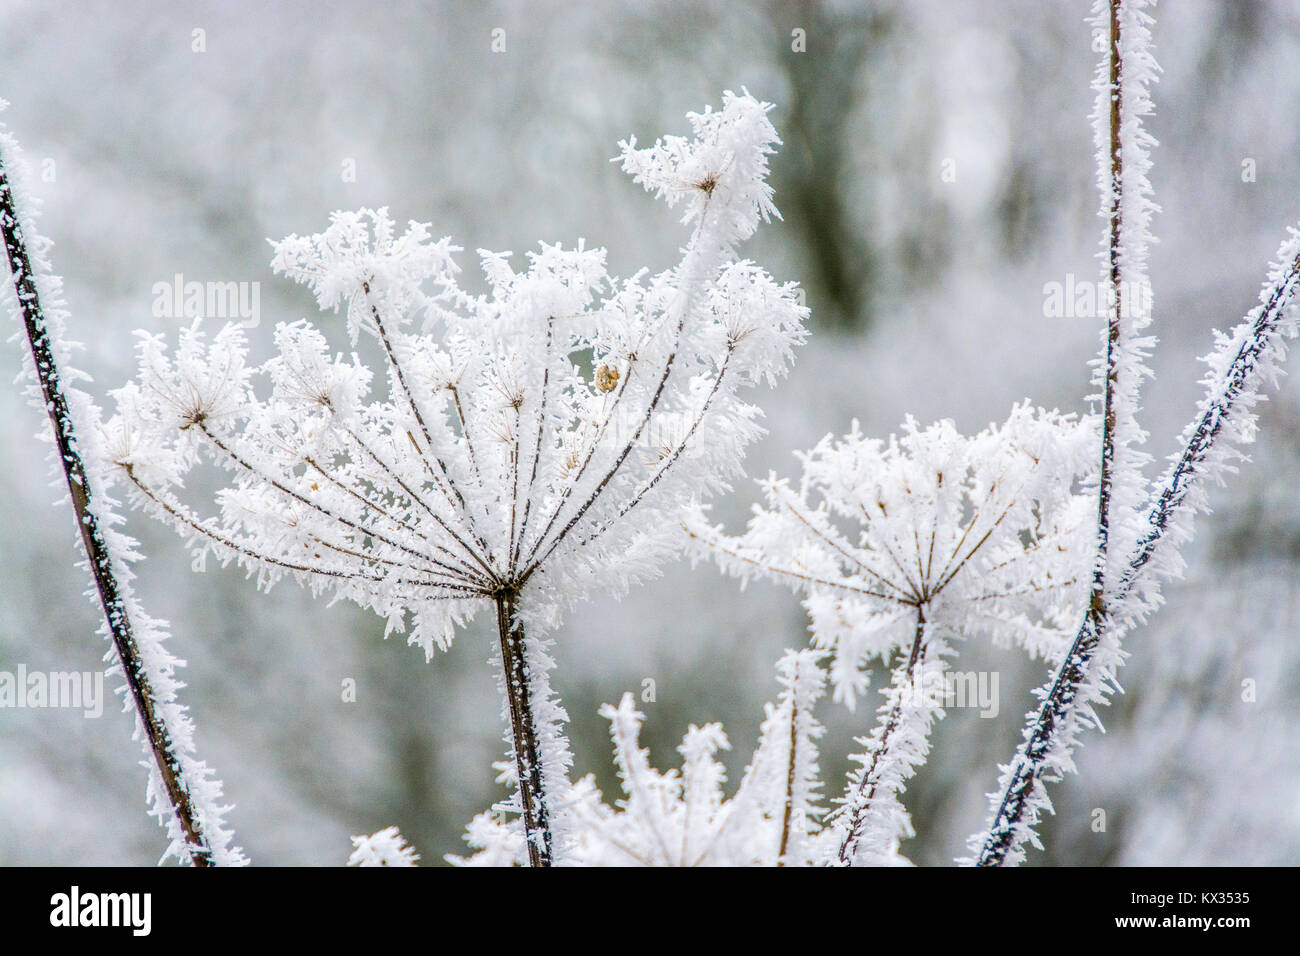 La plante couverte de glace crée l'illusion d'être la corolle d'une  merveilleuse fleur blanche Photo Stock - Alamy